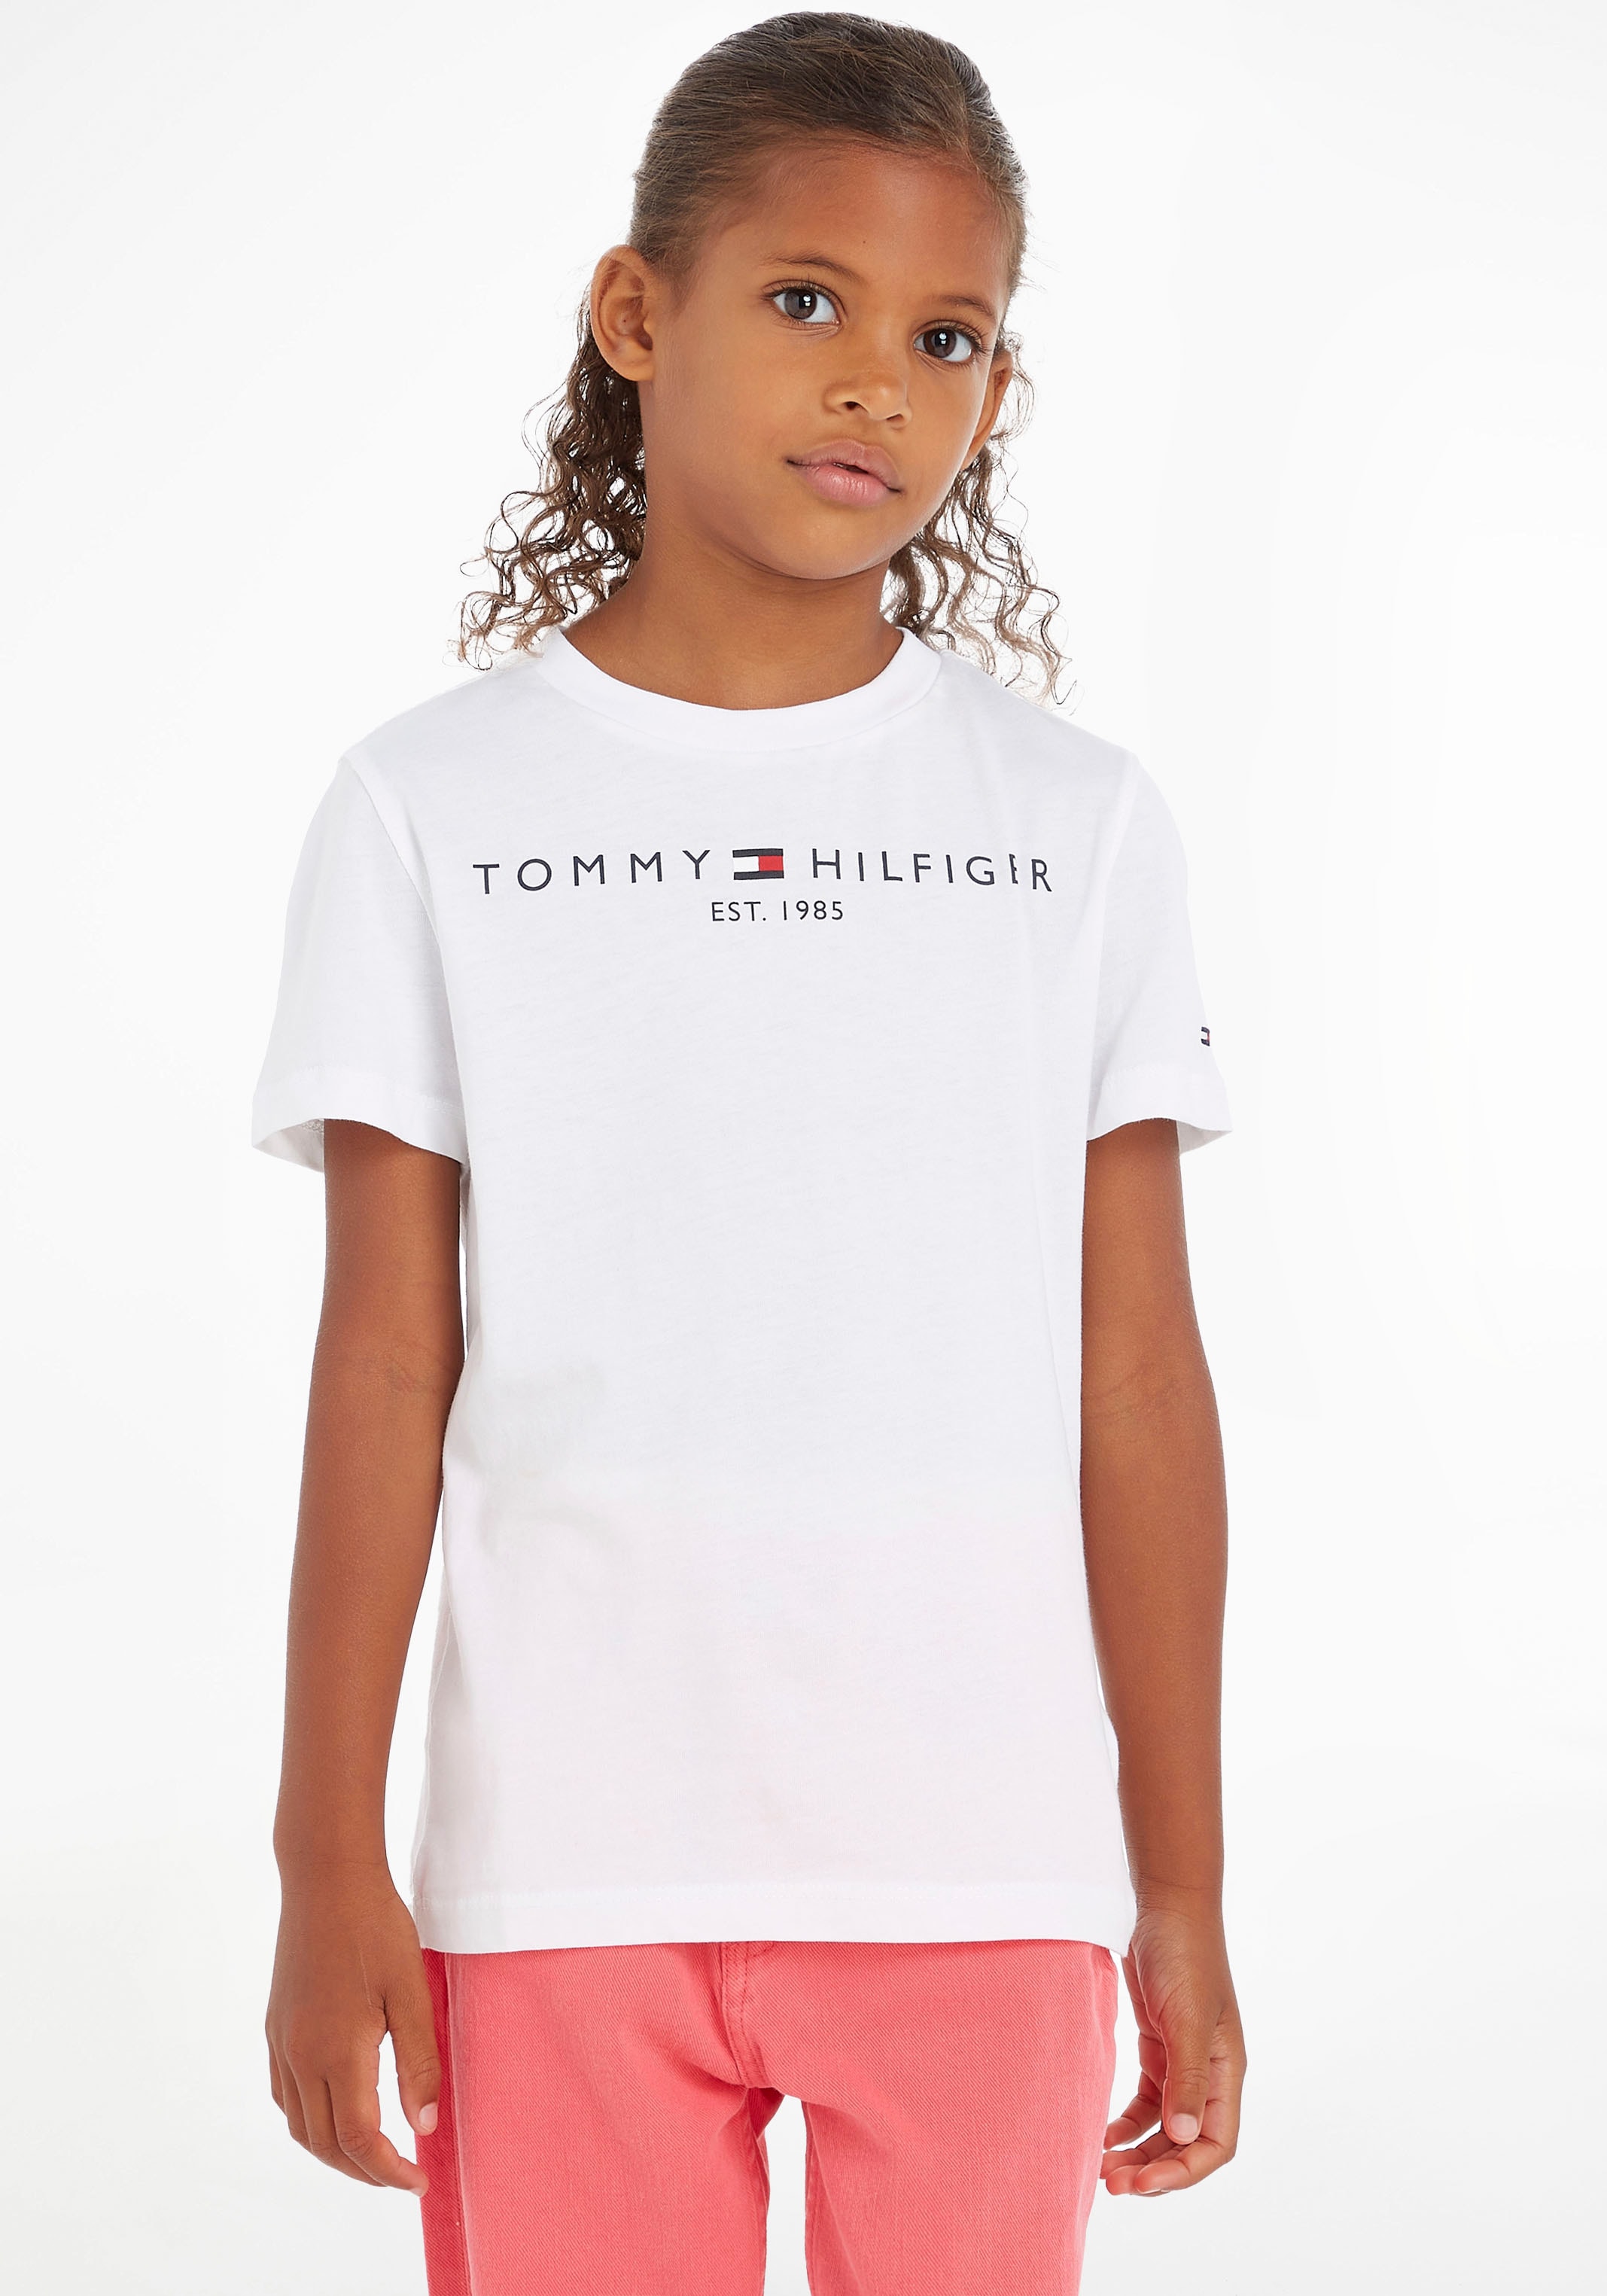 Tommy Hilfiger bestellen Kids Kinder »ESSENTIAL Jungen und TEE«, Junior MiniMe,für Mädchen T-Shirt online